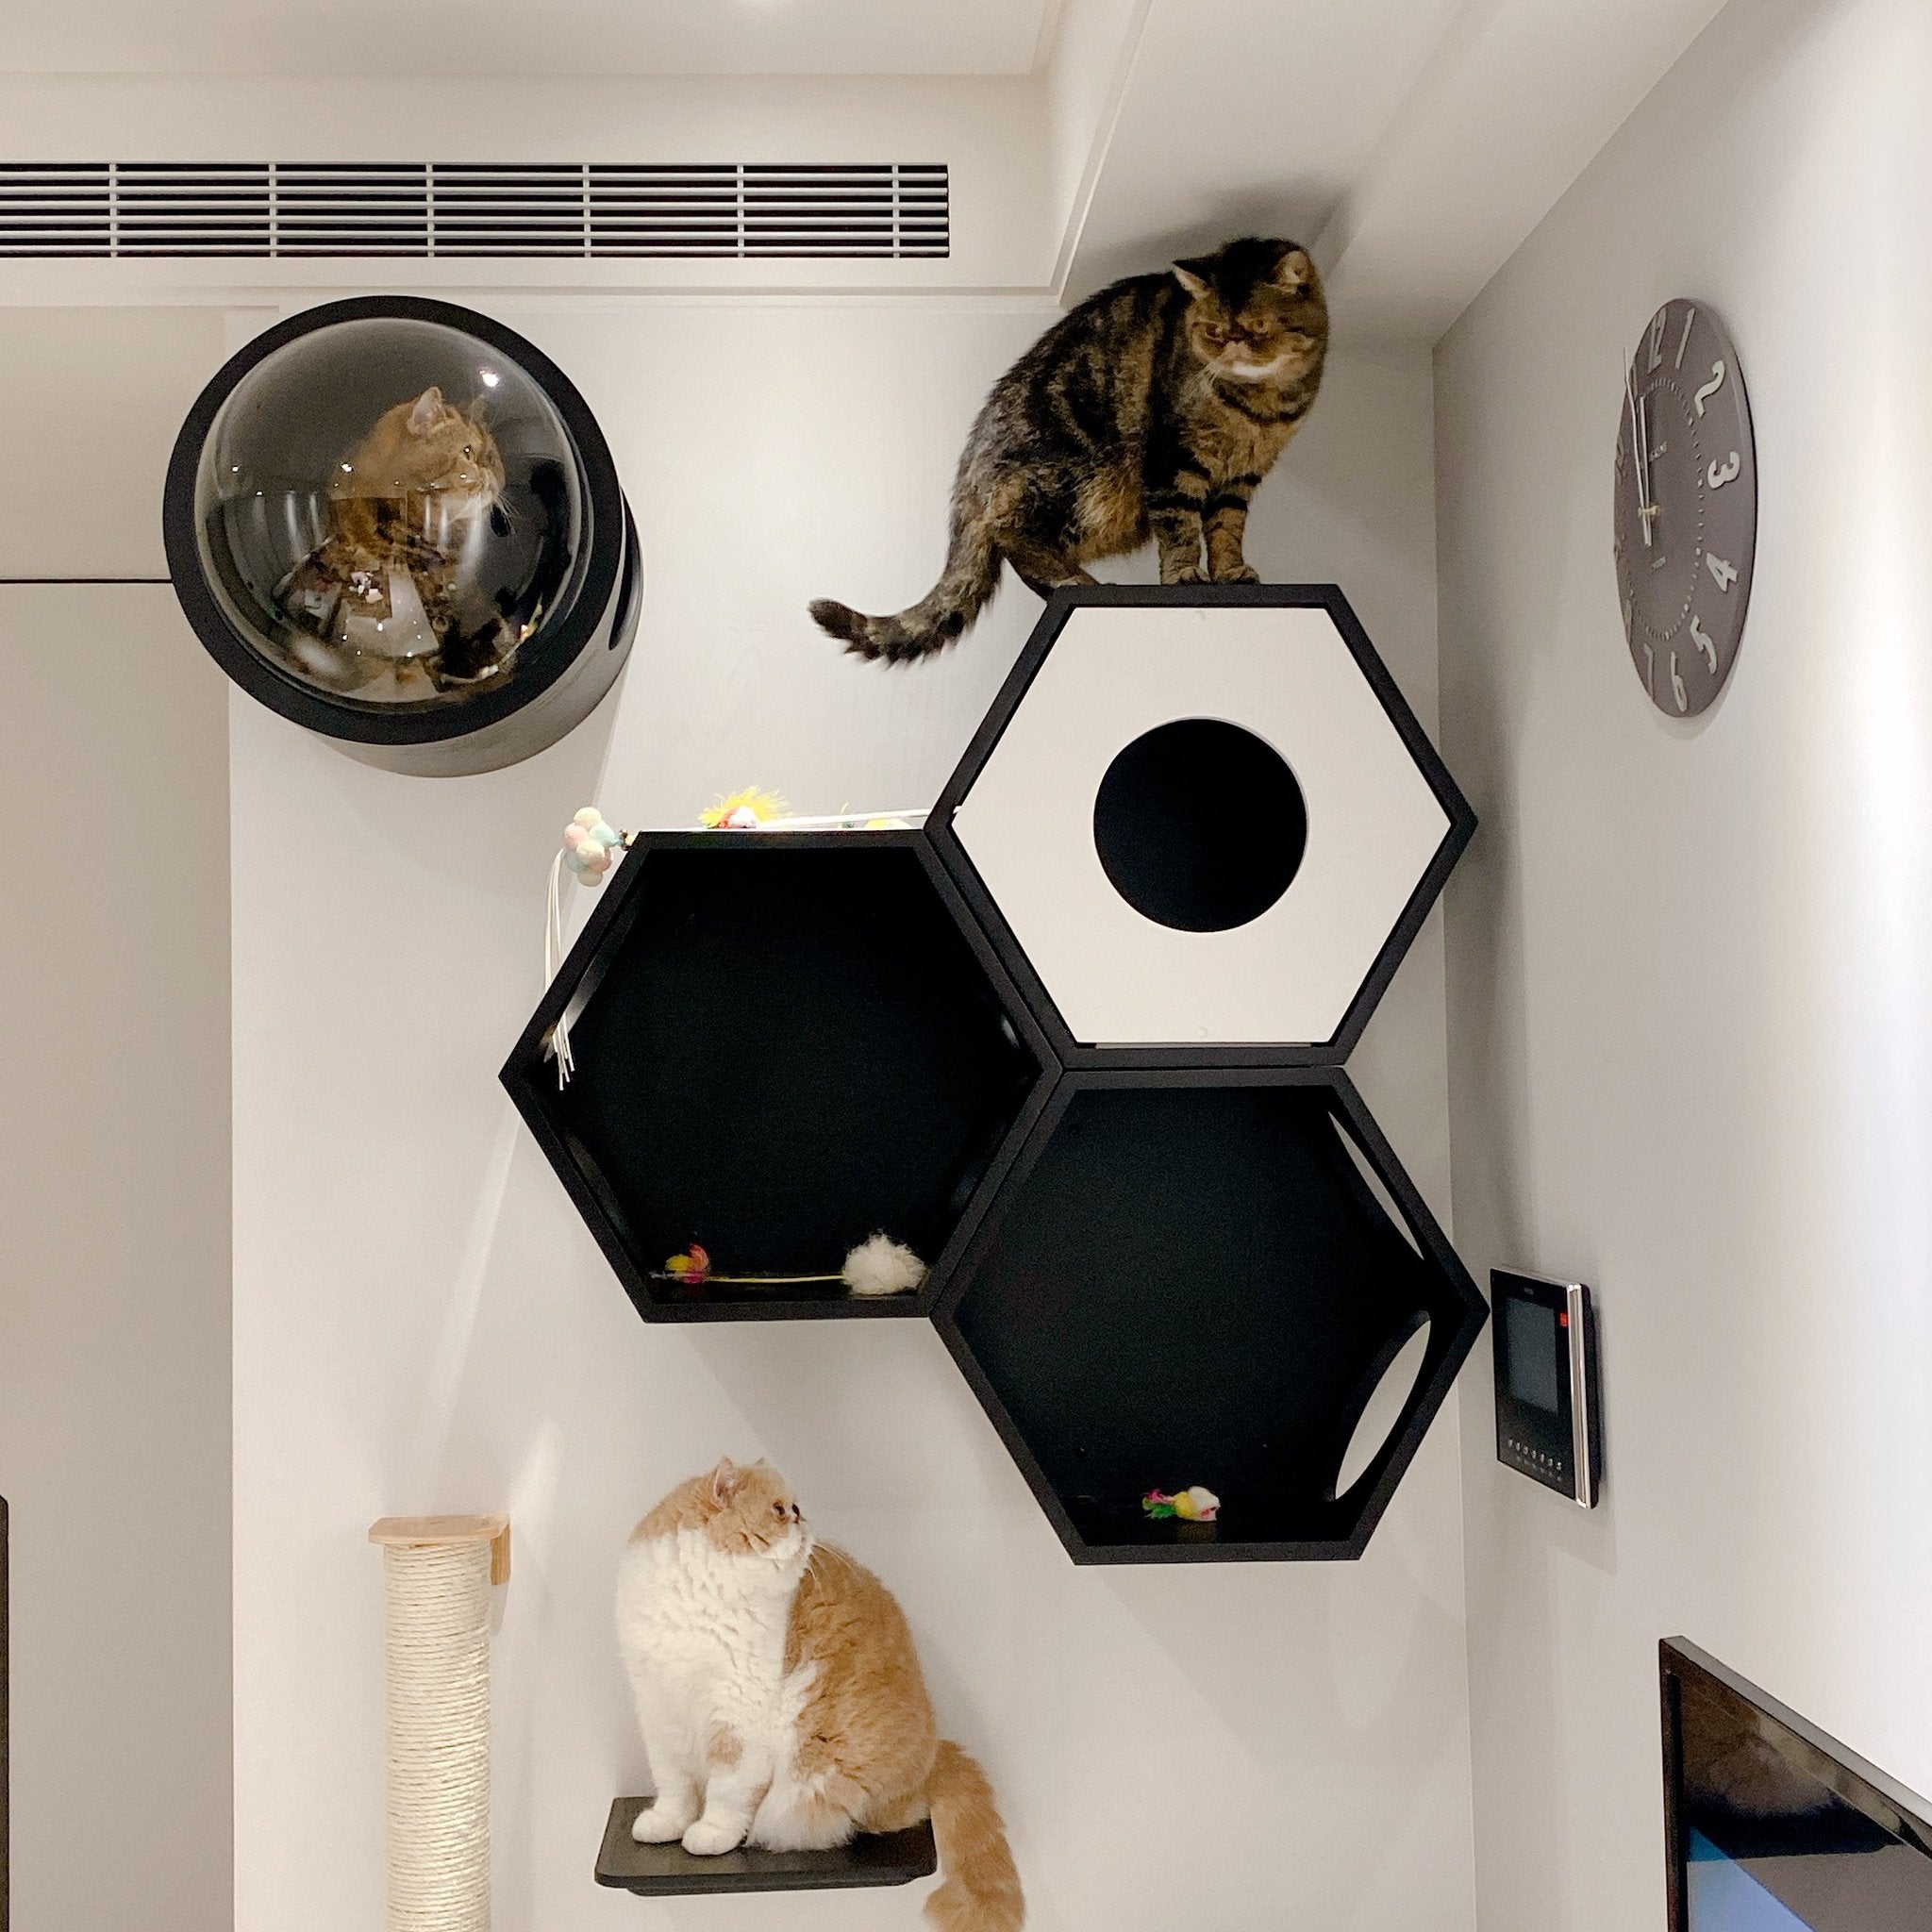 パイン無垢材で作られた壁掛けタイプのキャットタワー。黒色の六角形で四面に穴を開けているので、猫は好きな場所から出入りができます。複数繋げることにより、トンネルのようなキャッ